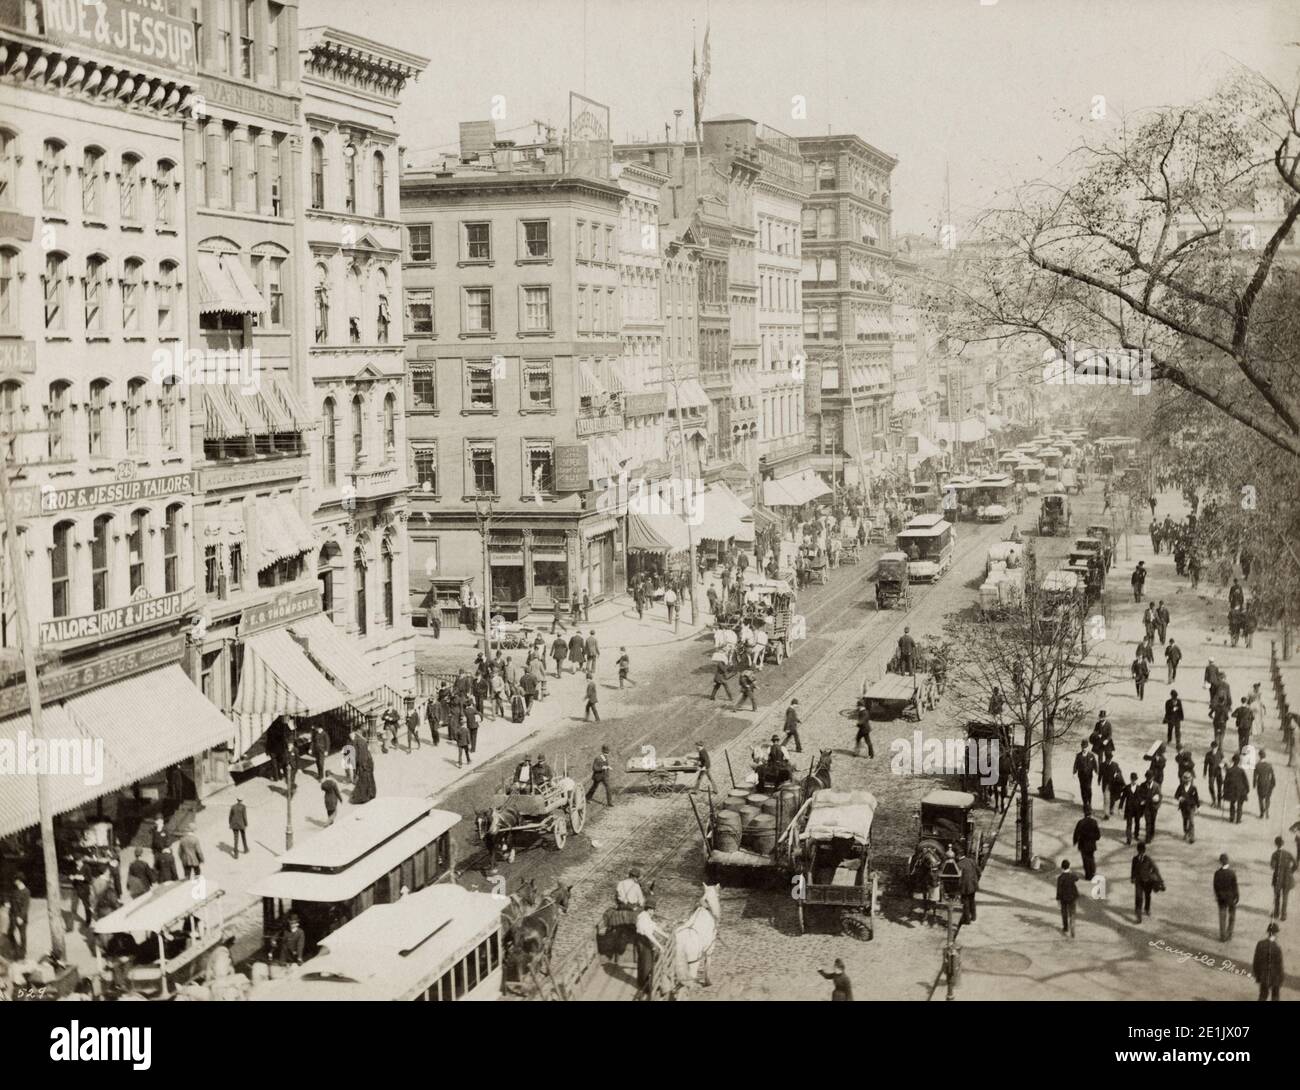 Vintage-Foto des 19. Jahrhunderts: Broadway New York, die Straße voller Fußgänger, Straßenbahnen und Pferde. Bild c.1890. Stockfoto